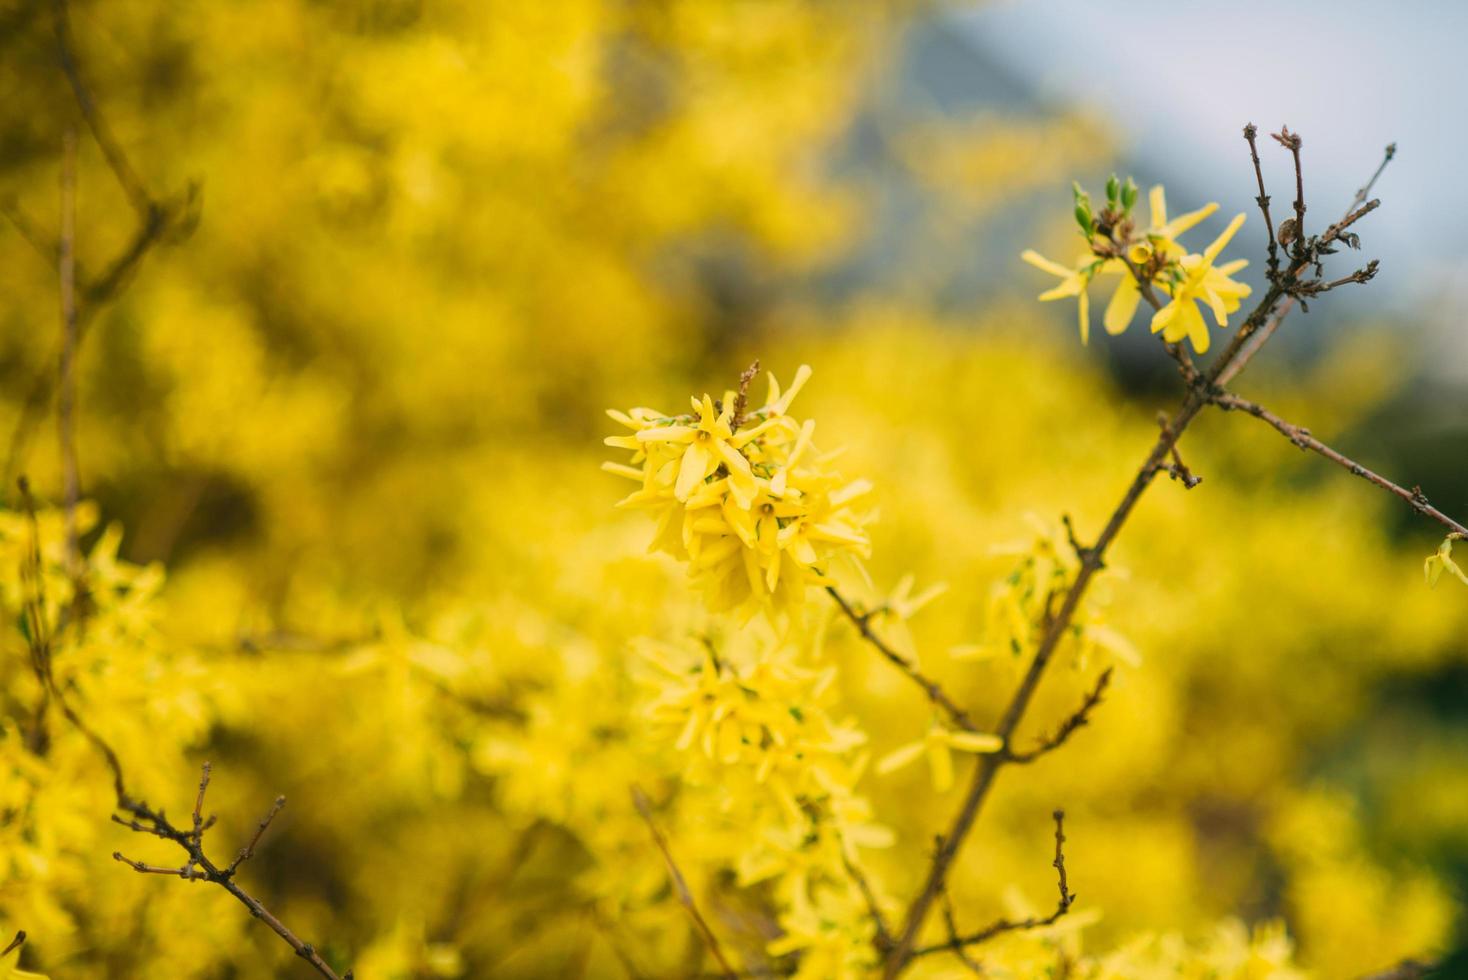 arbre jaune en fleur photo